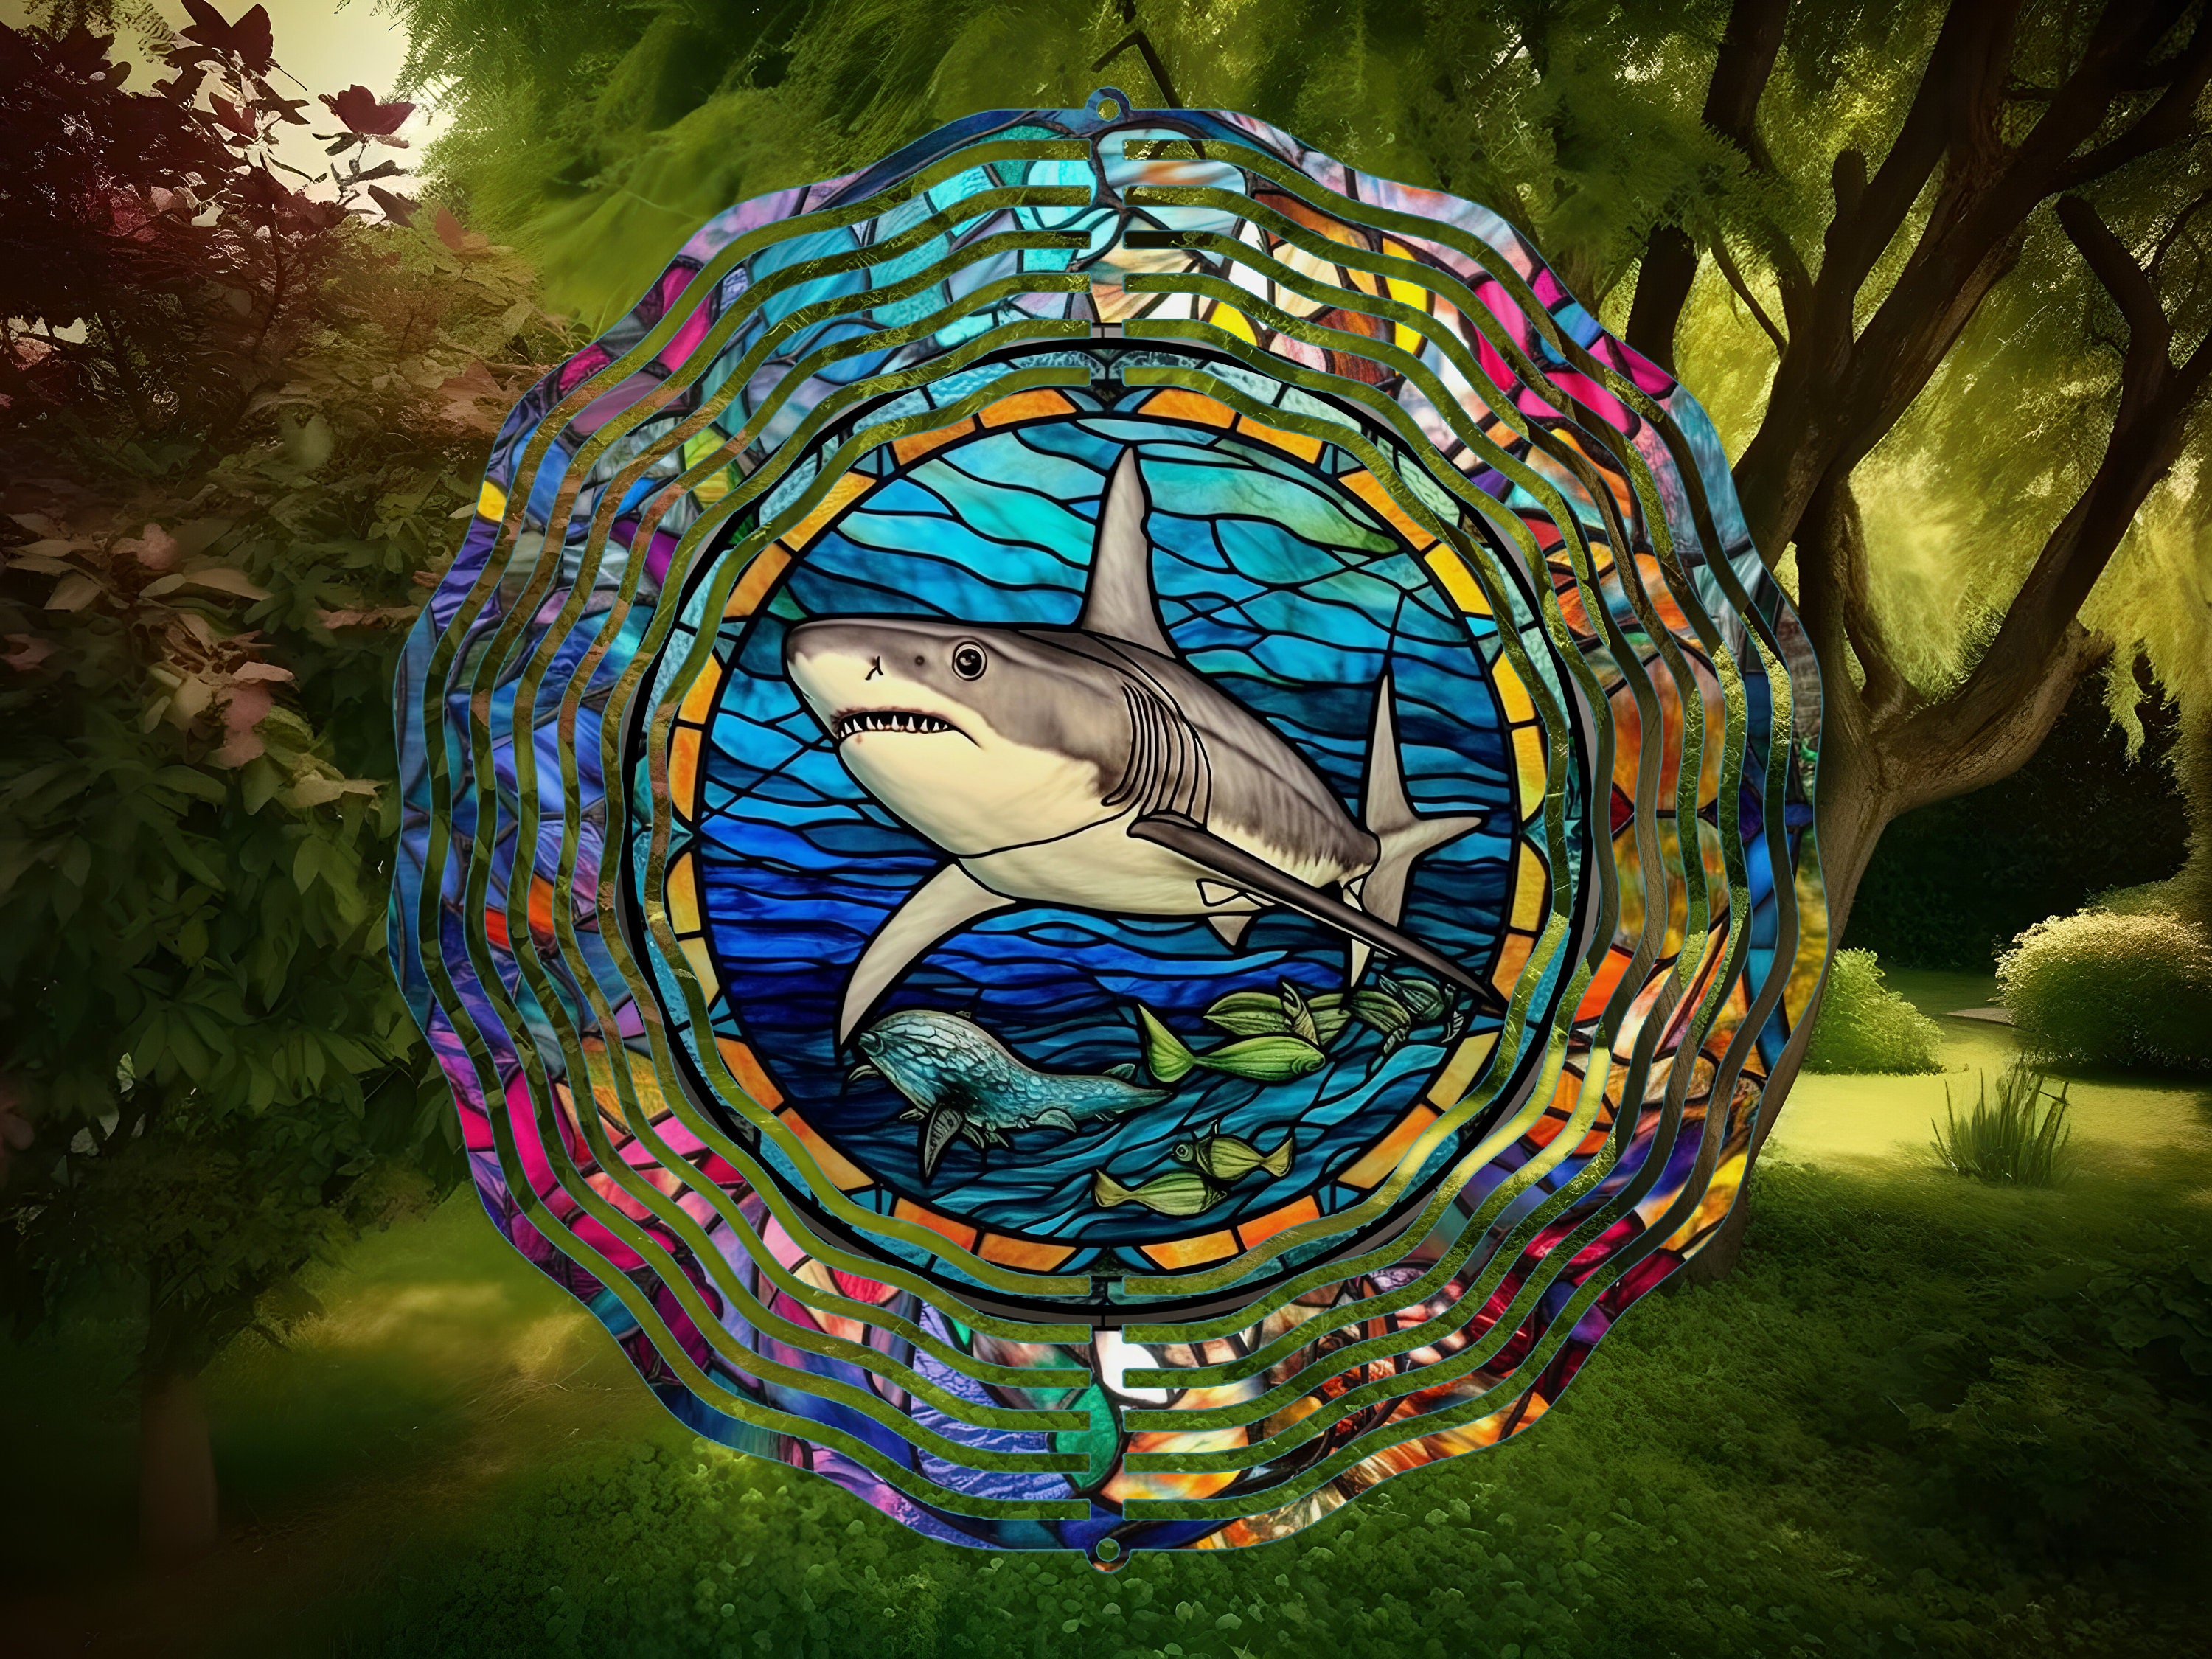 Shark Hook Metal Art / Nature Home Decor / Shark and Fishing Metal Sign /  Hunt and Shark Home Decor -  Canada